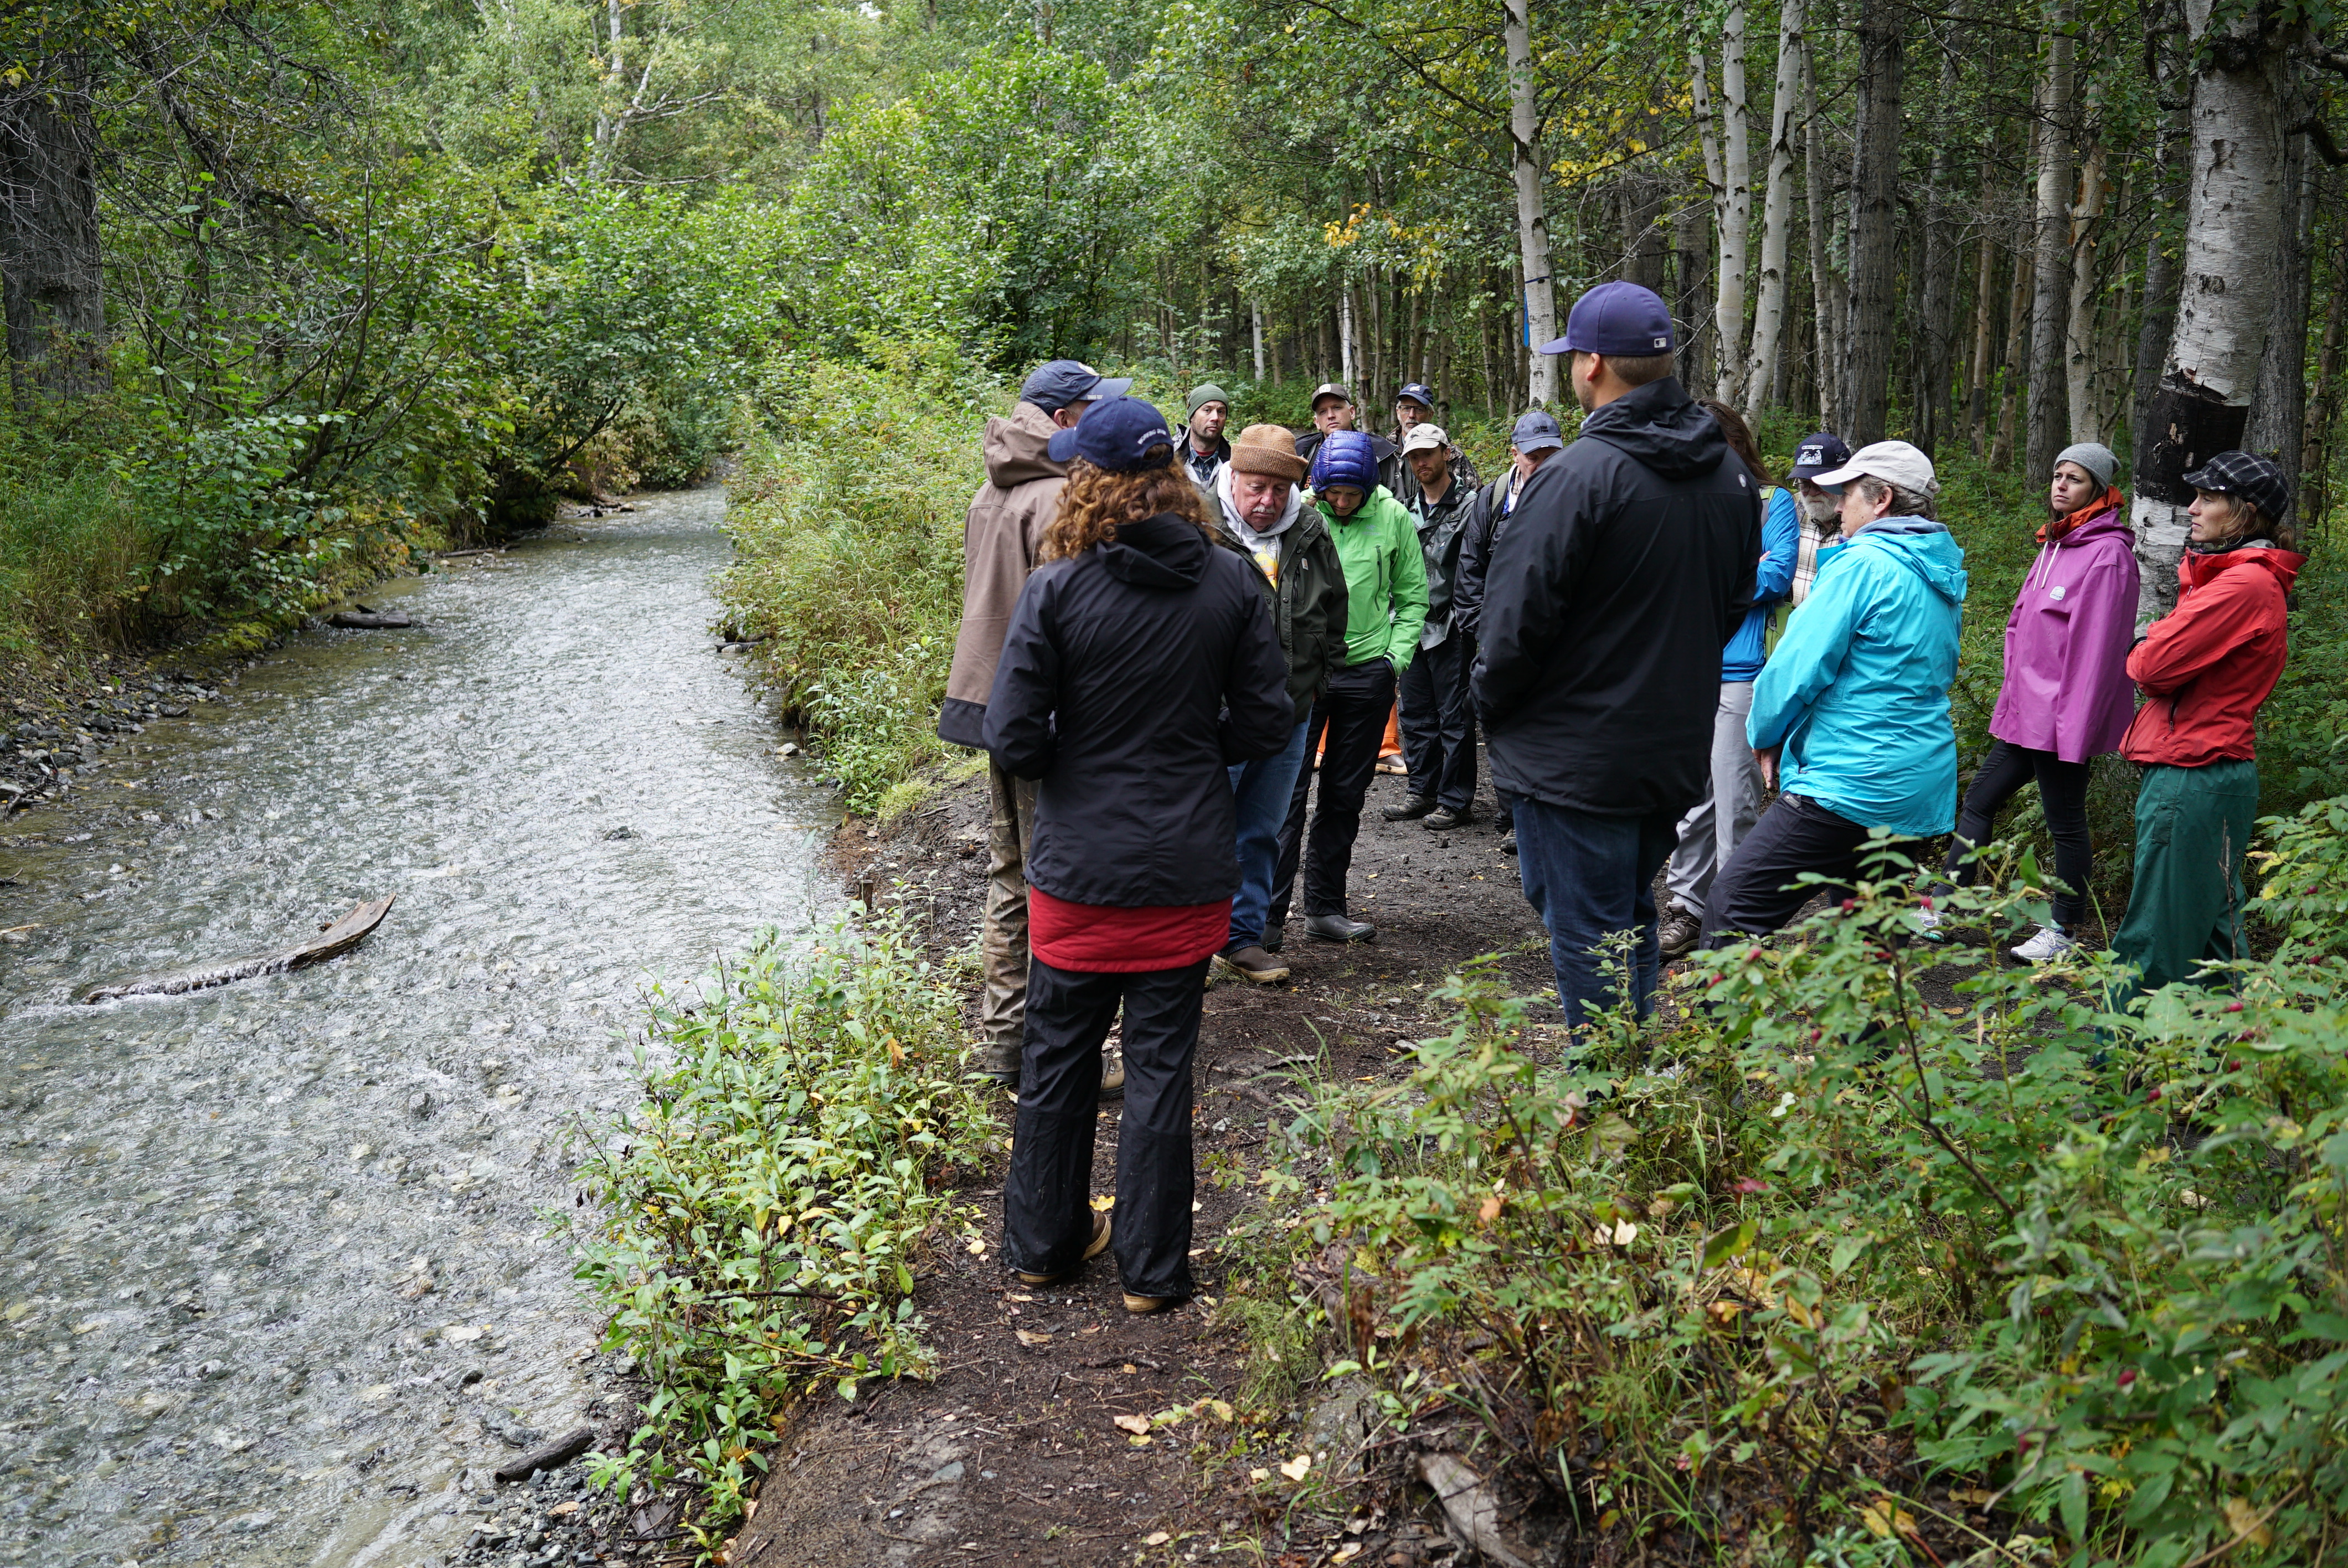 Matanuska-Susitna Basin Salmon Habitat Partnership Hosts Alaskan Projects Tour